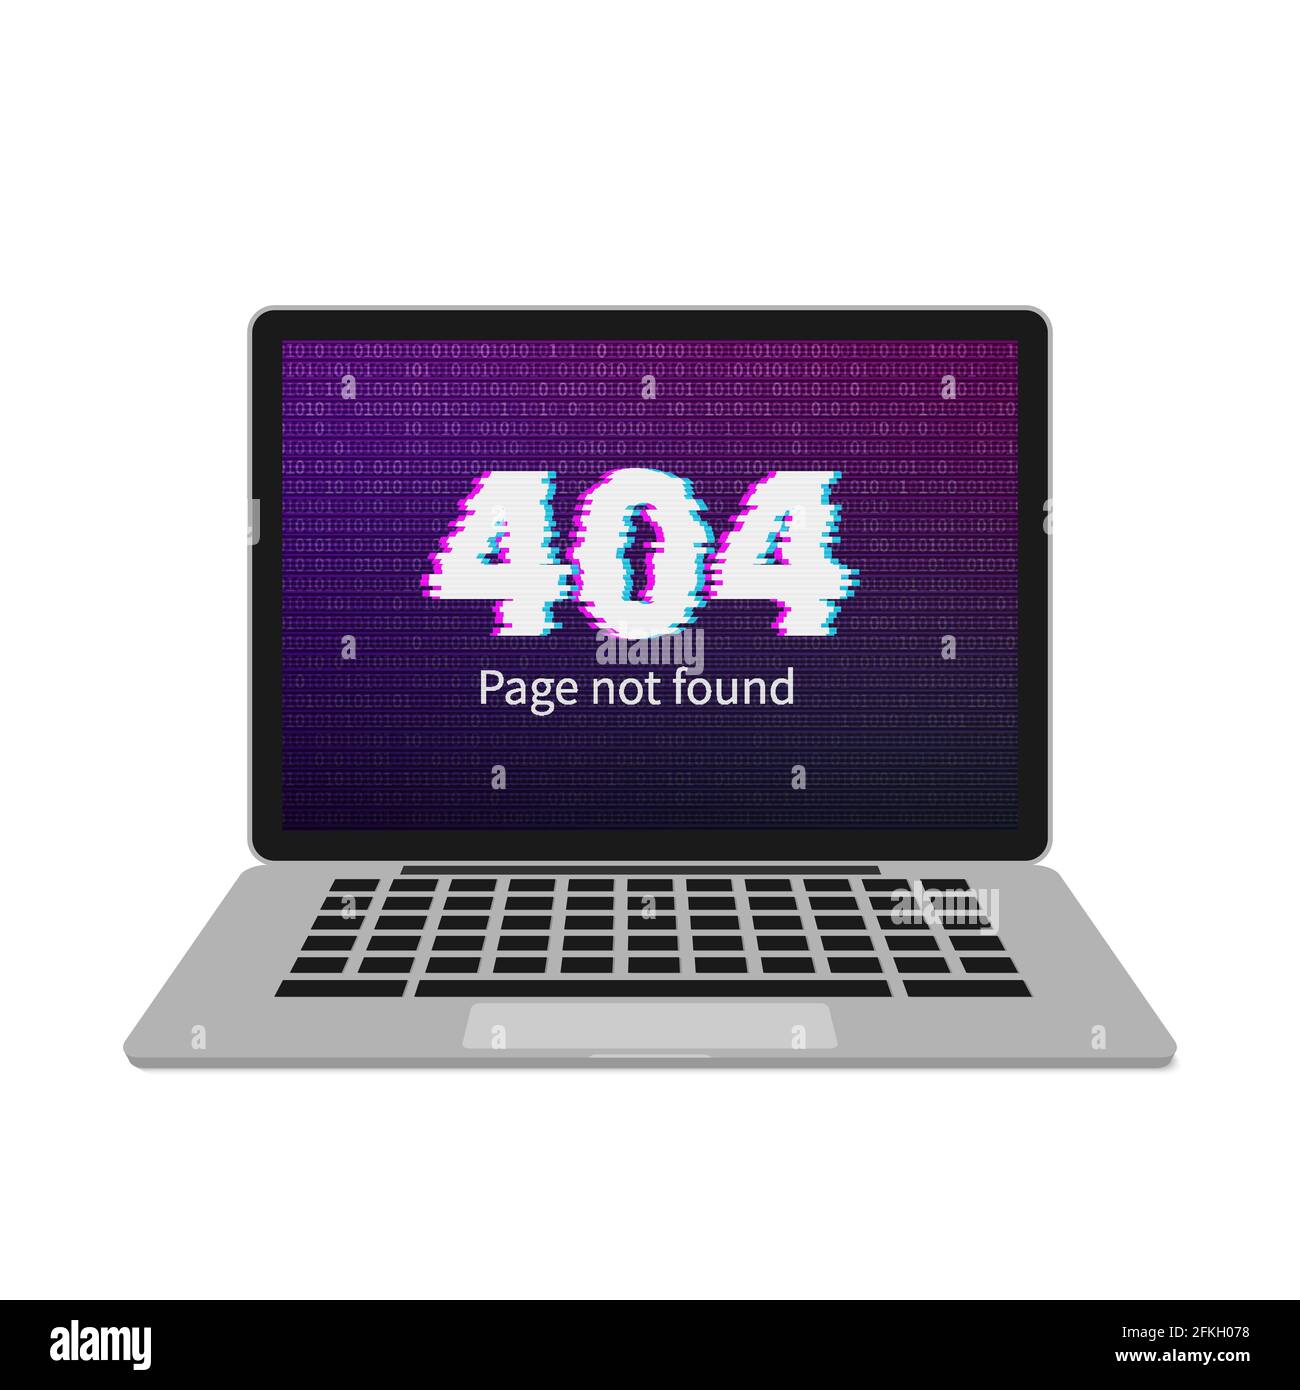 Nếu bạn gặp phải tình trạng 404 error khi truy cập vào website, đừng lo lắng. Hãy truy cập vào hình ảnh liên quan và tận hưởng khoảnh khắc tuyệt vời cùng những hình ảnh tuyệt đẹp. Chắc chắn bạn sẽ quên hết những bức xạ toả ra từ màn hình máy tính chỉ trong nháy mắt. 